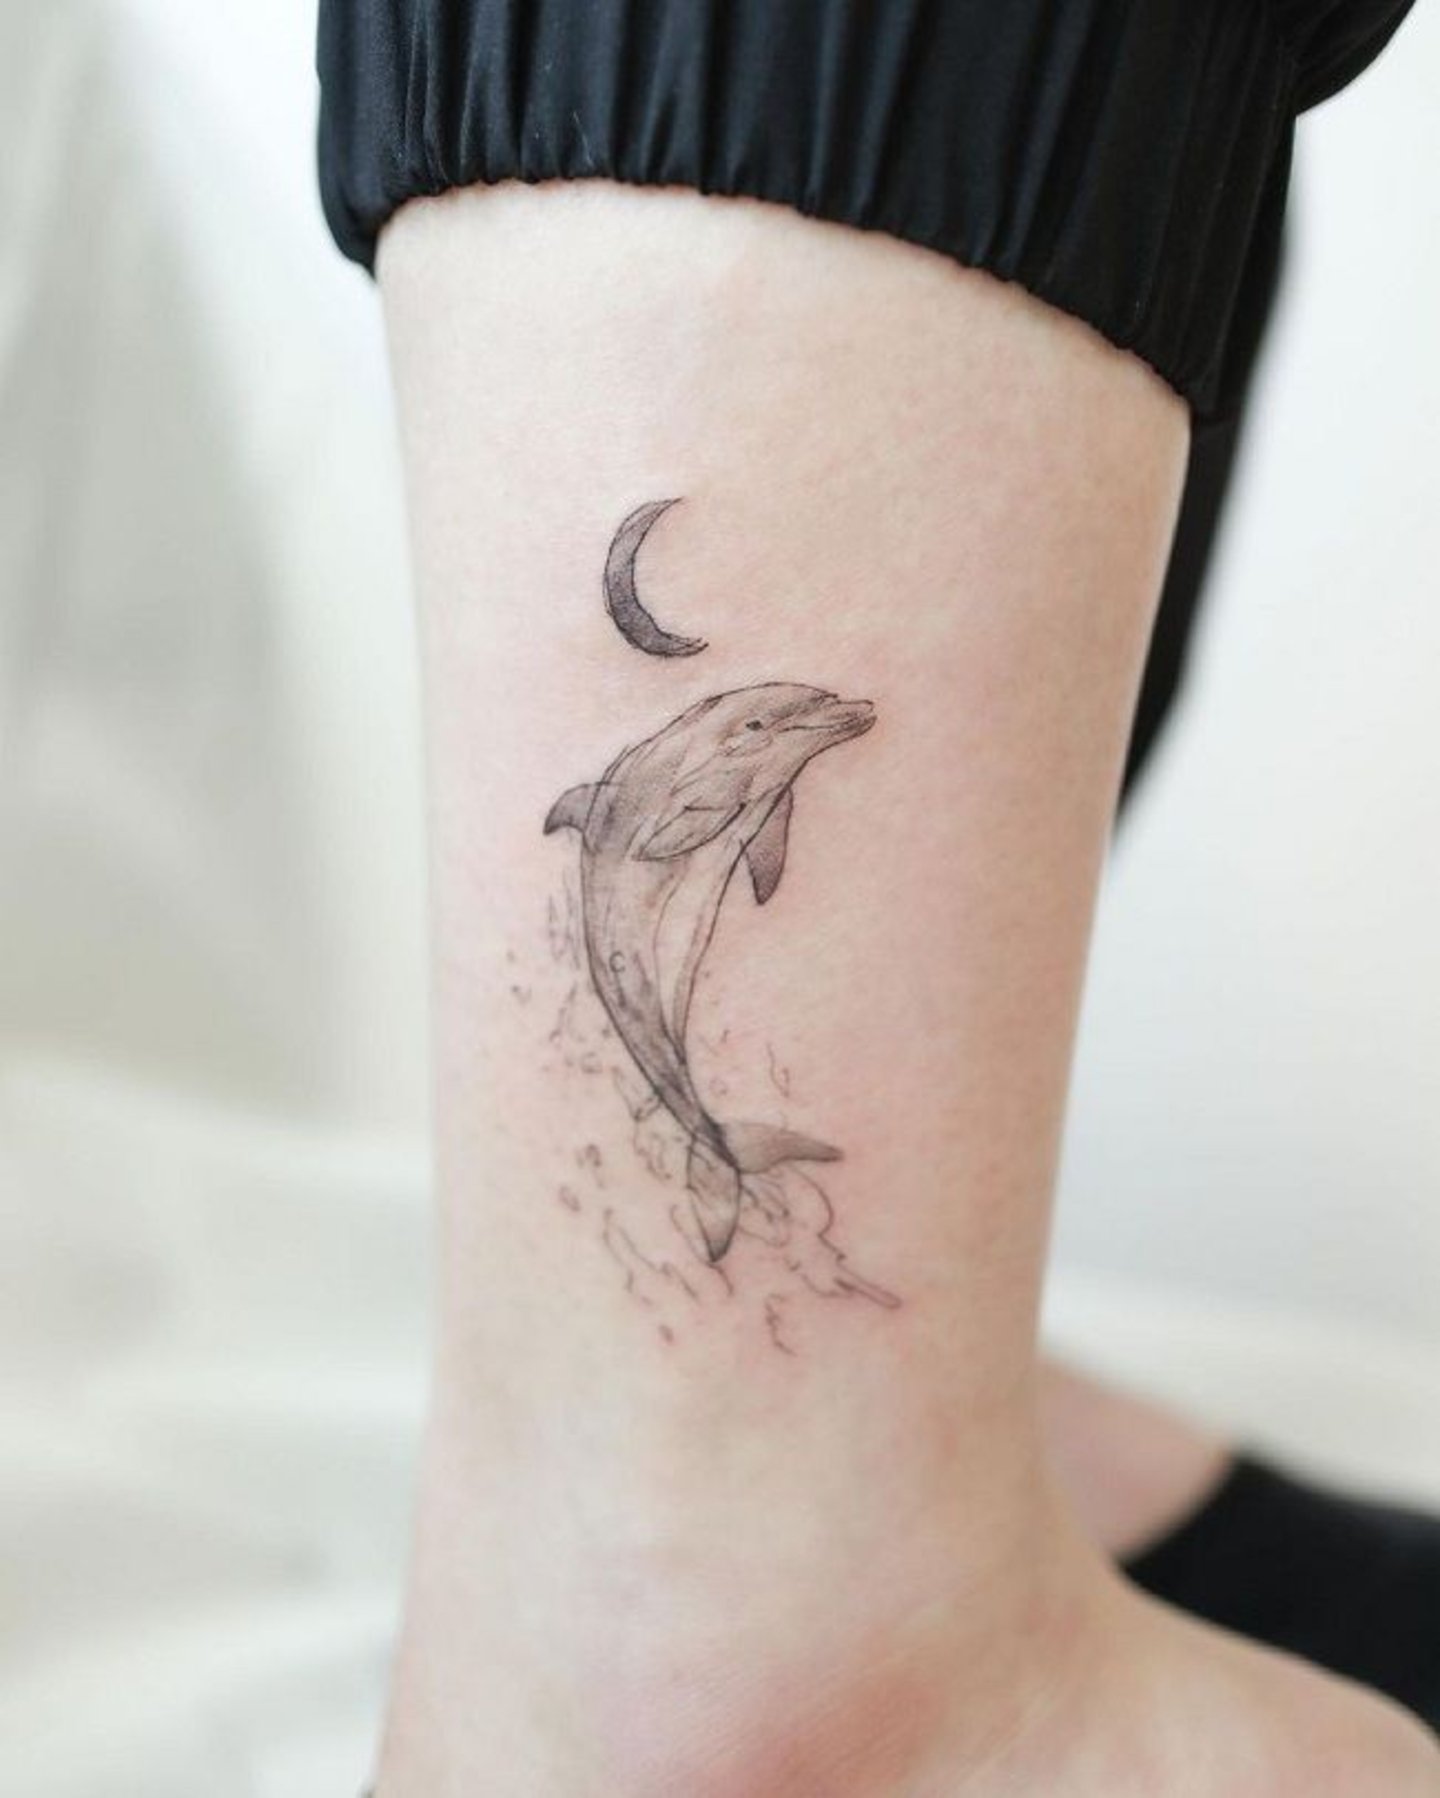 Tatuaje delicado de delfin